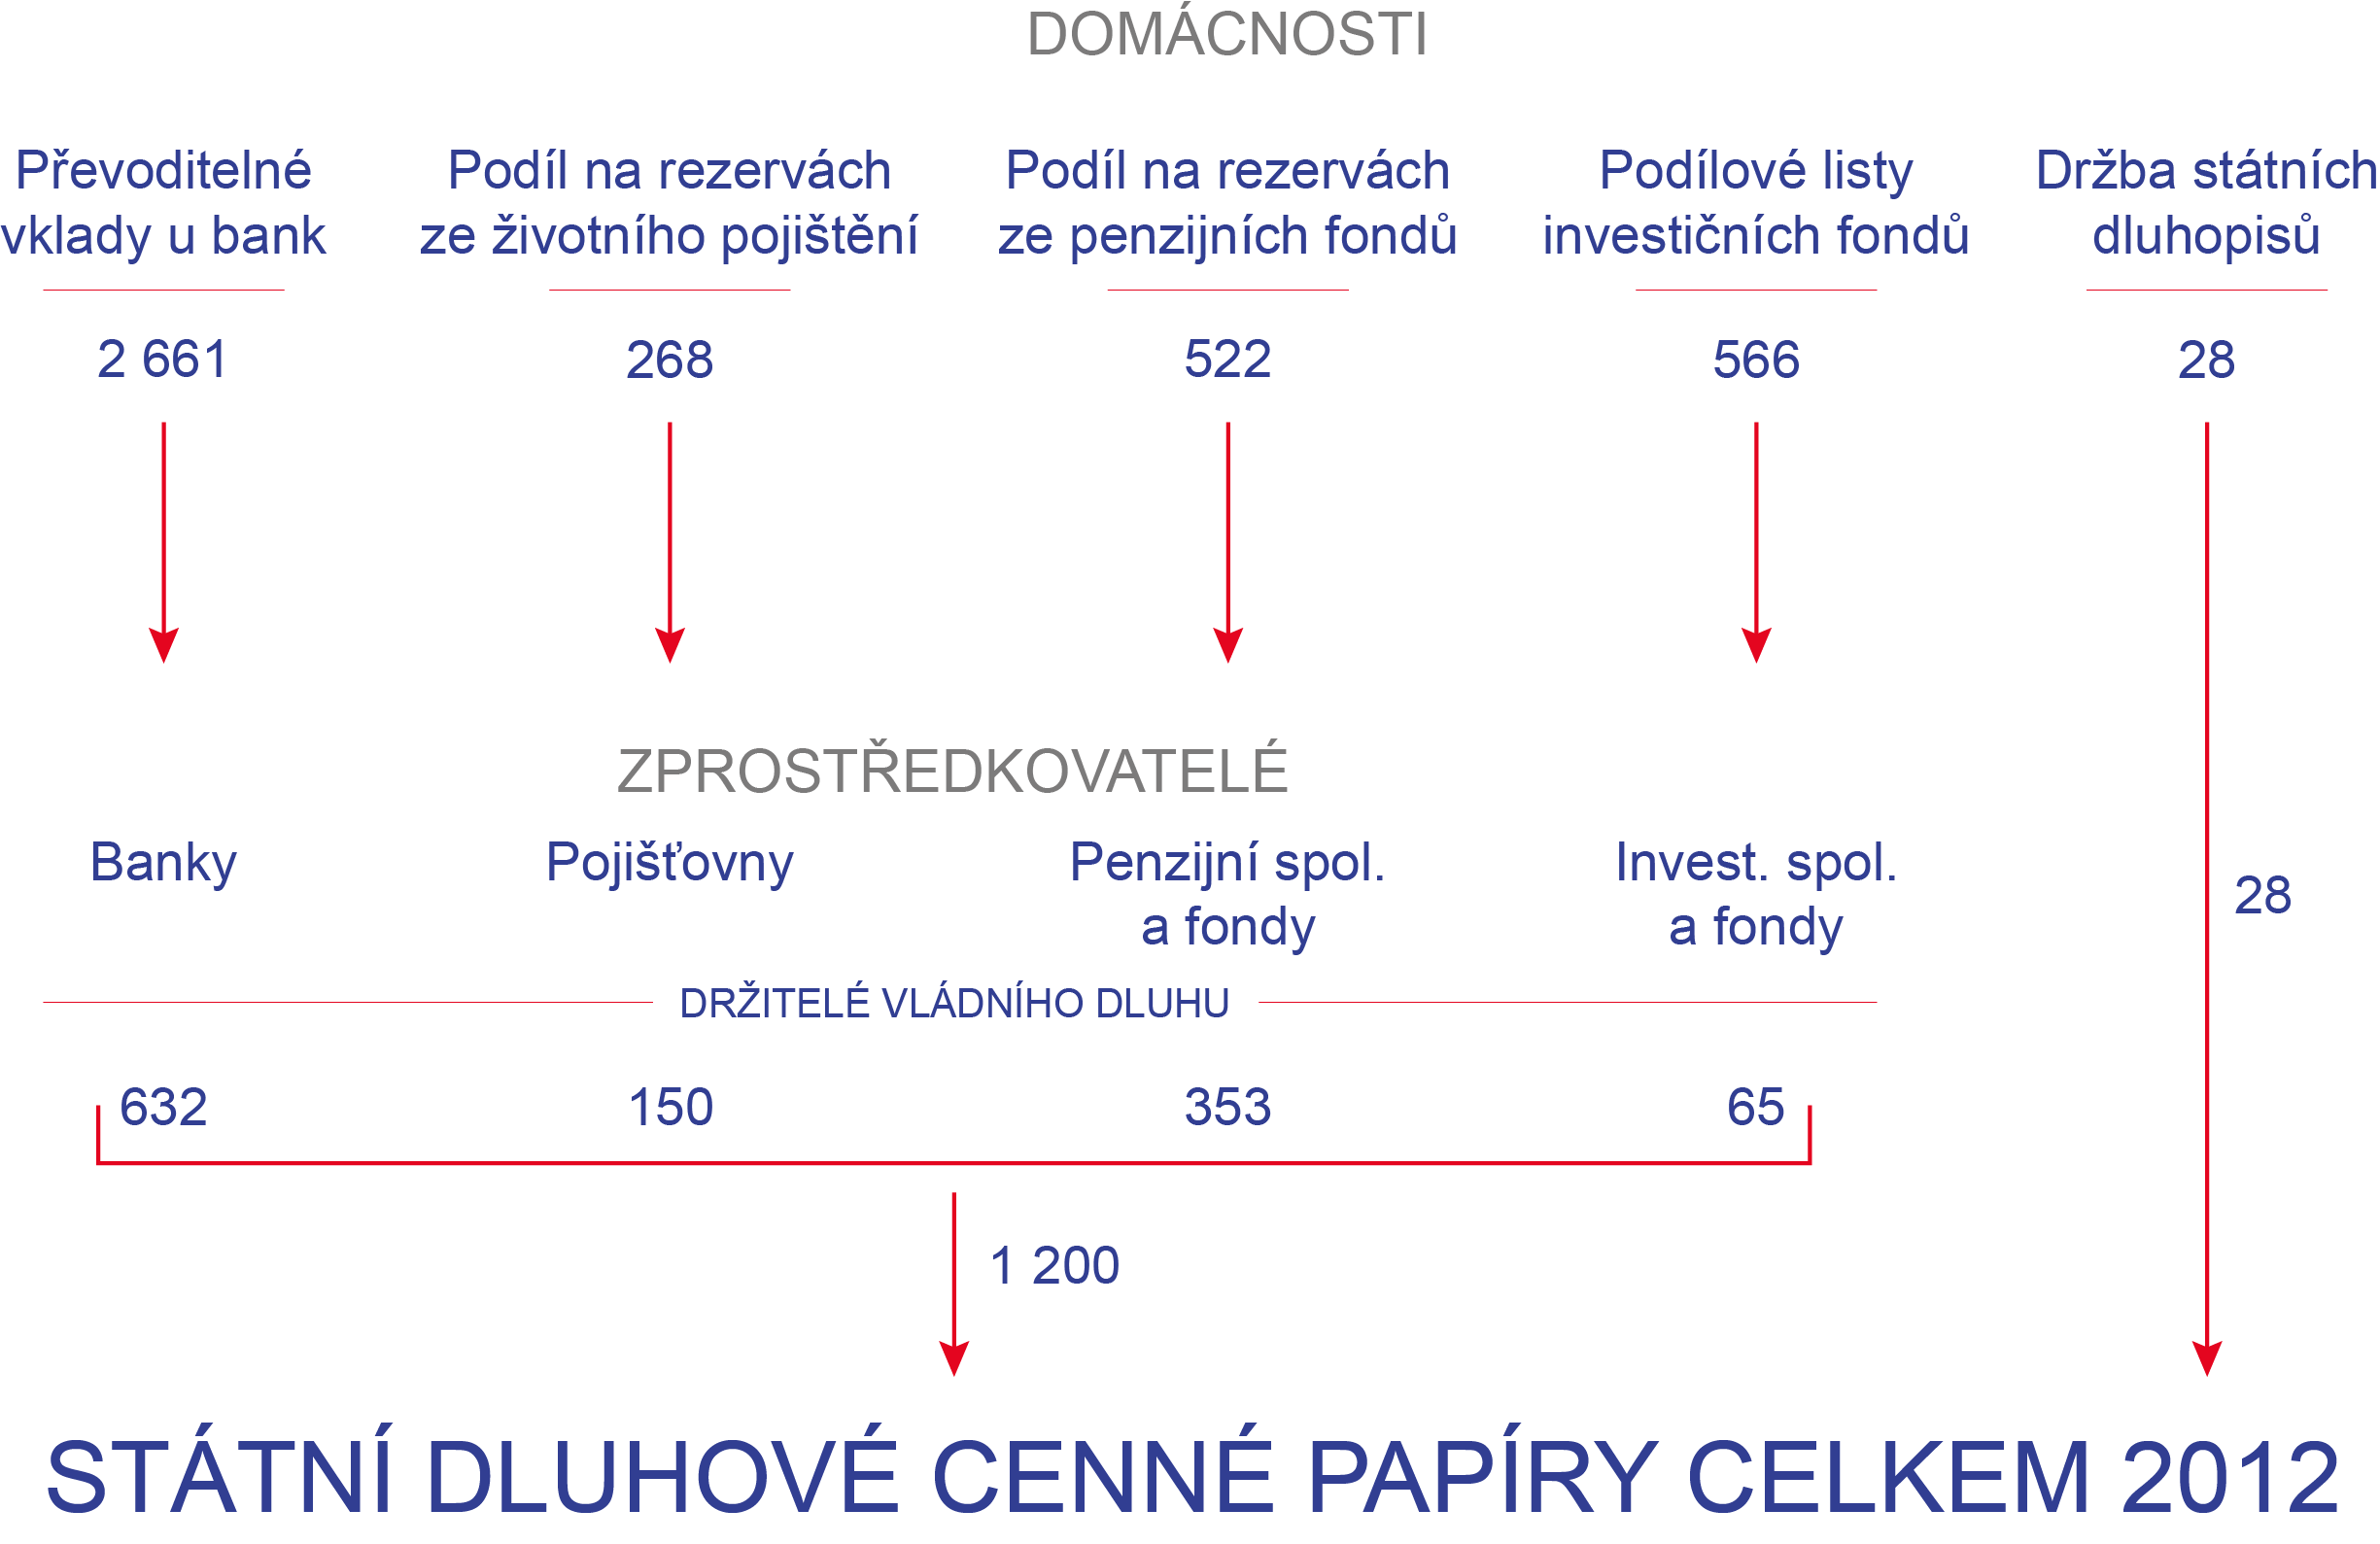 Obrázek 1: Sektor domácností jako věřitel vládního dluhu (ČR, v mld. Kč)